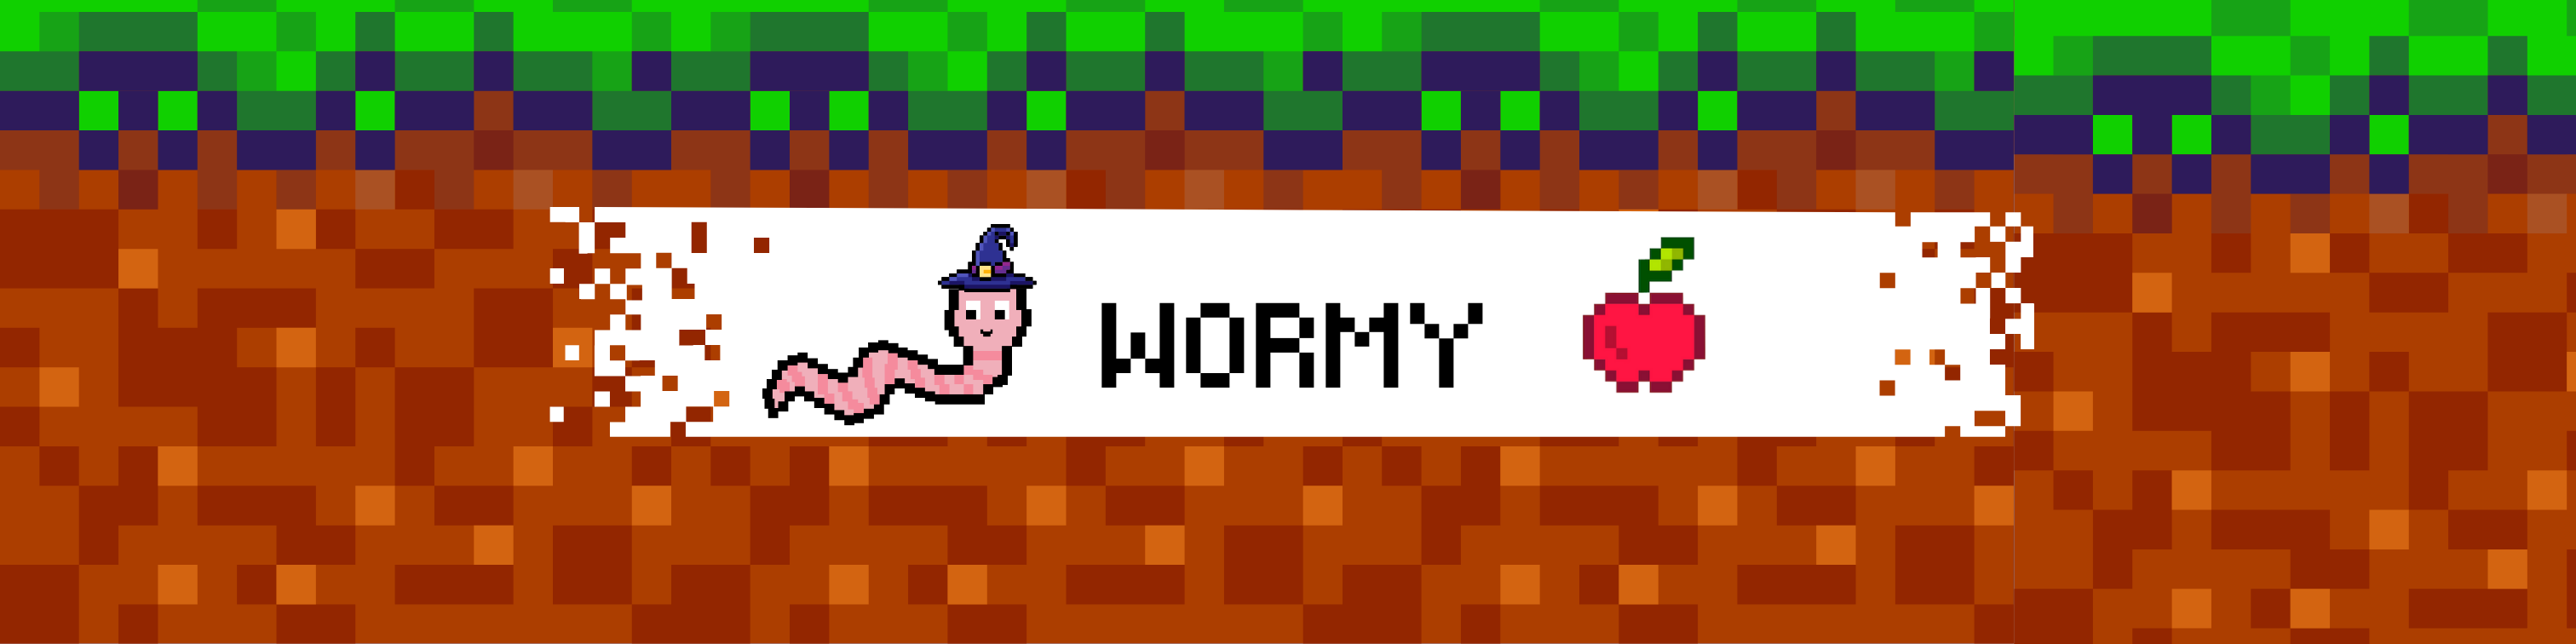 Wormy